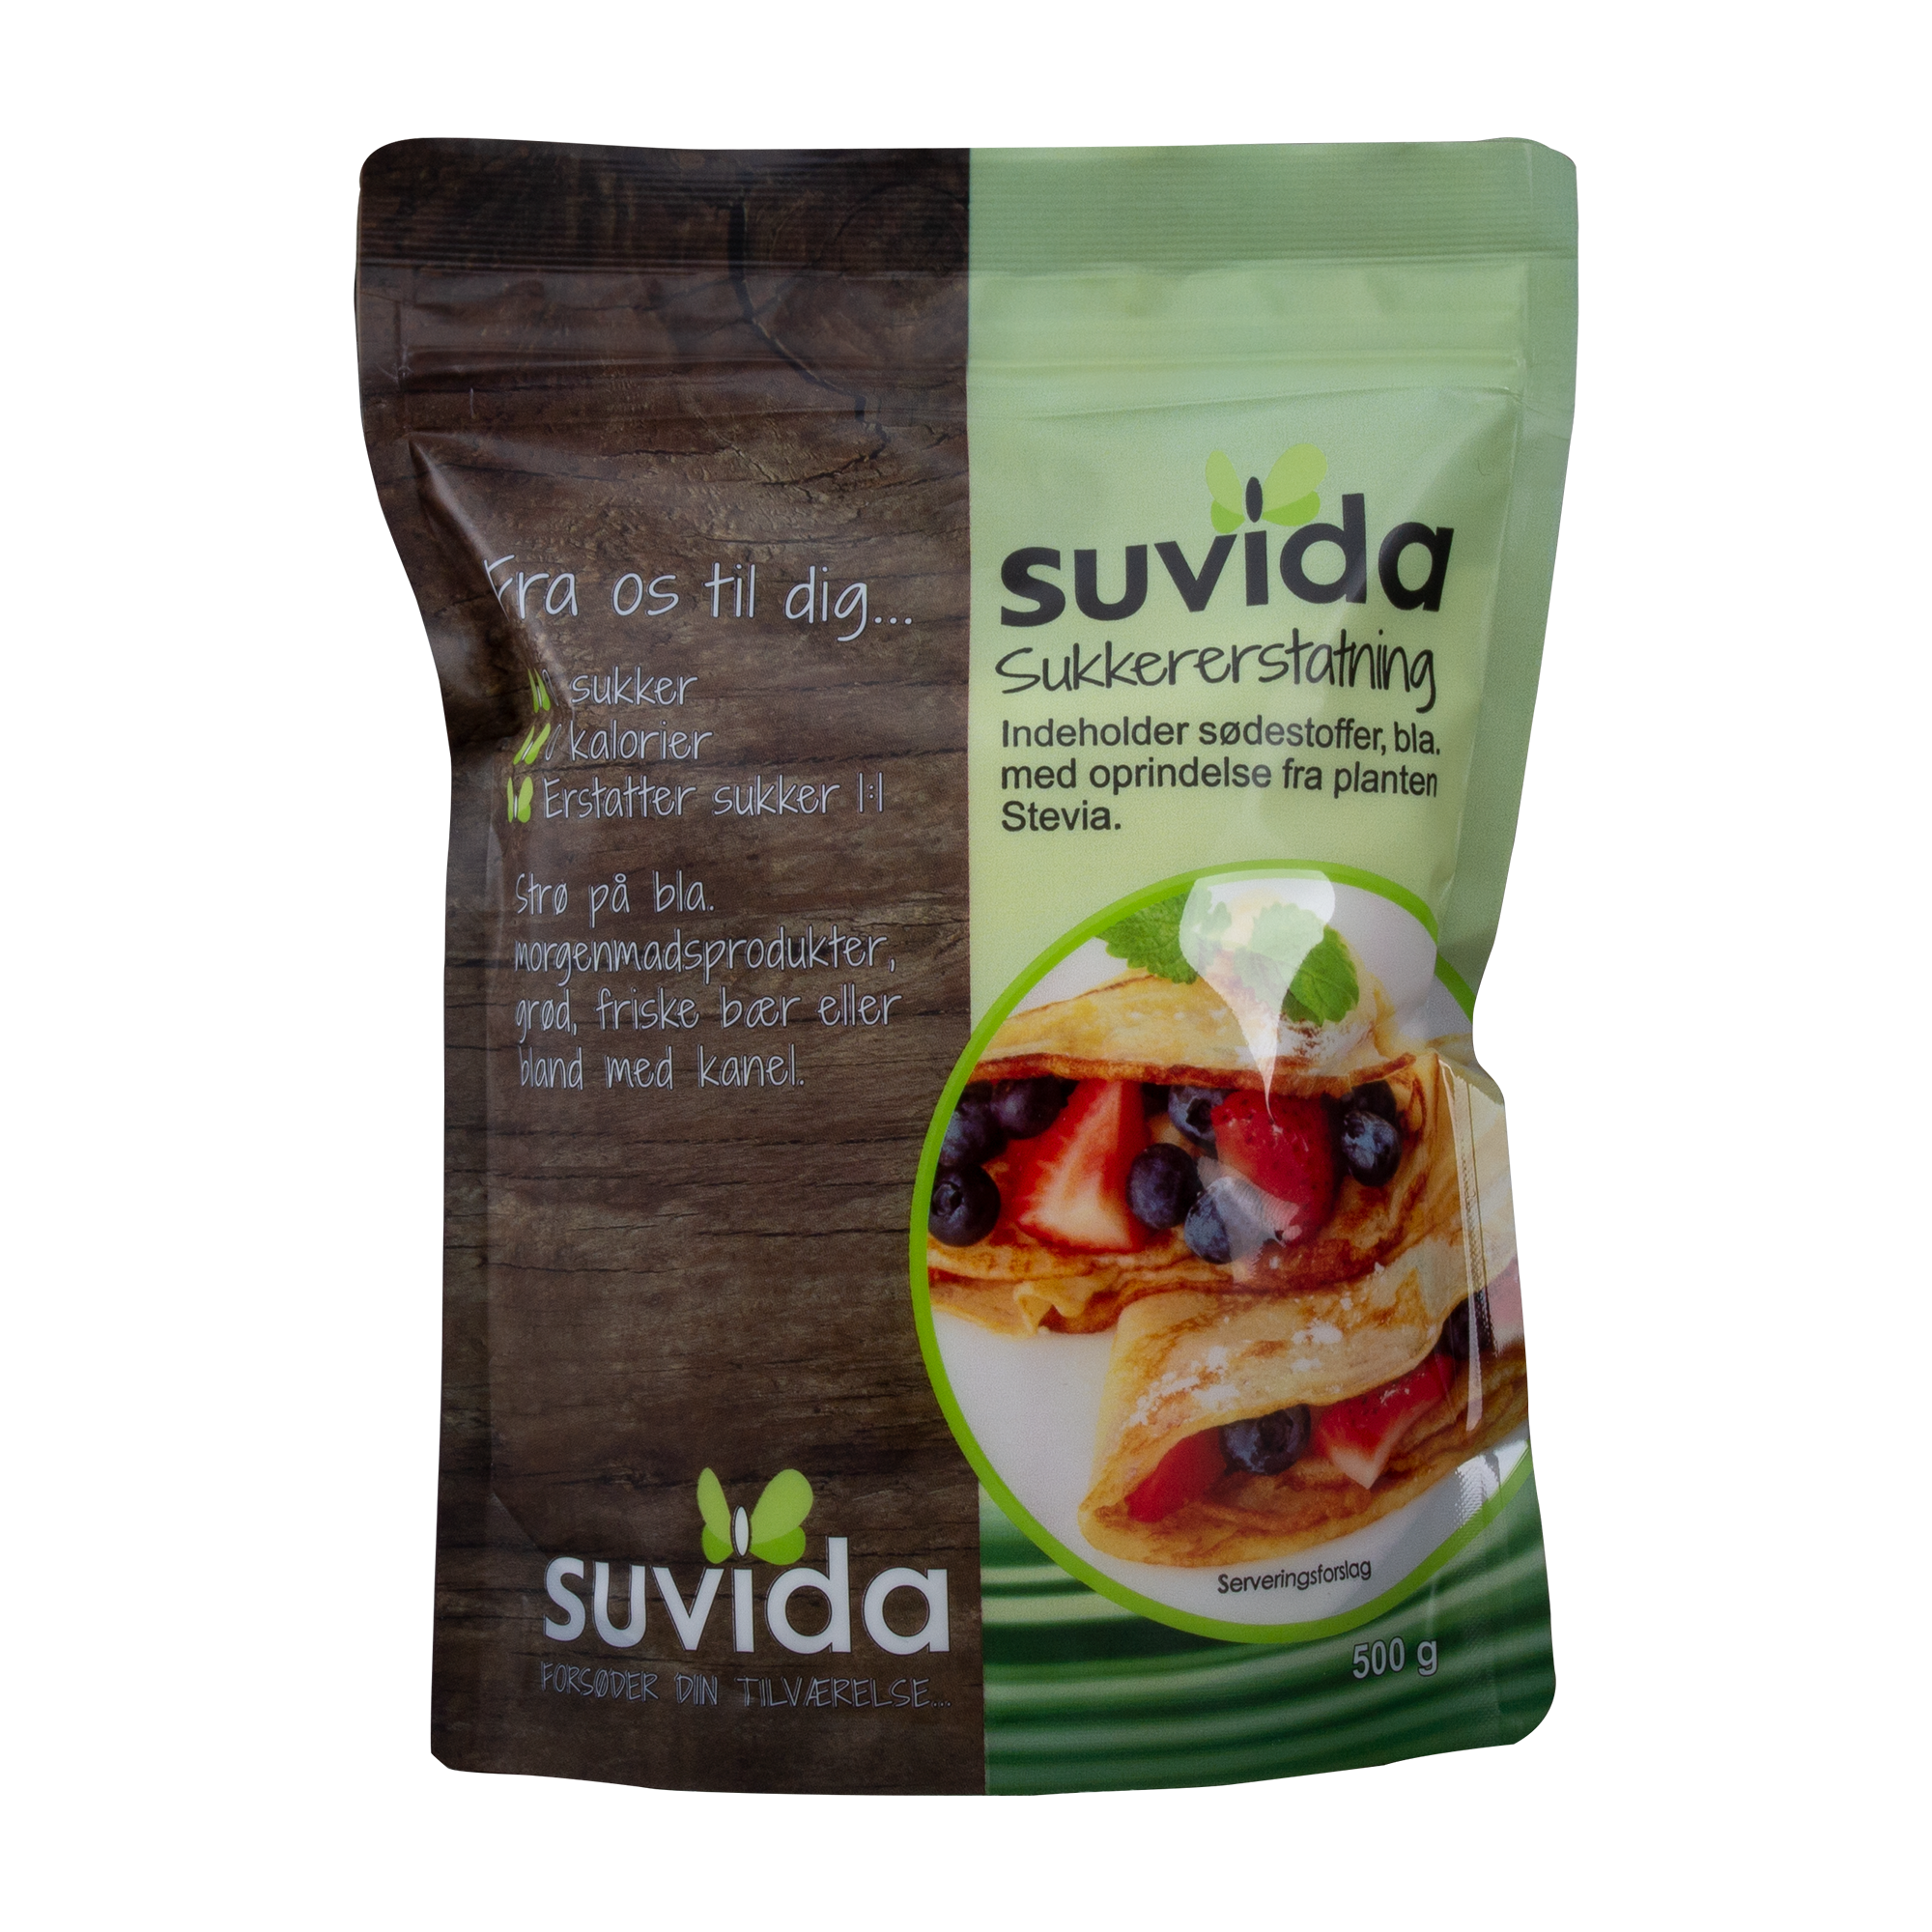 Suvida Strø/Sukkererstatning 500 g